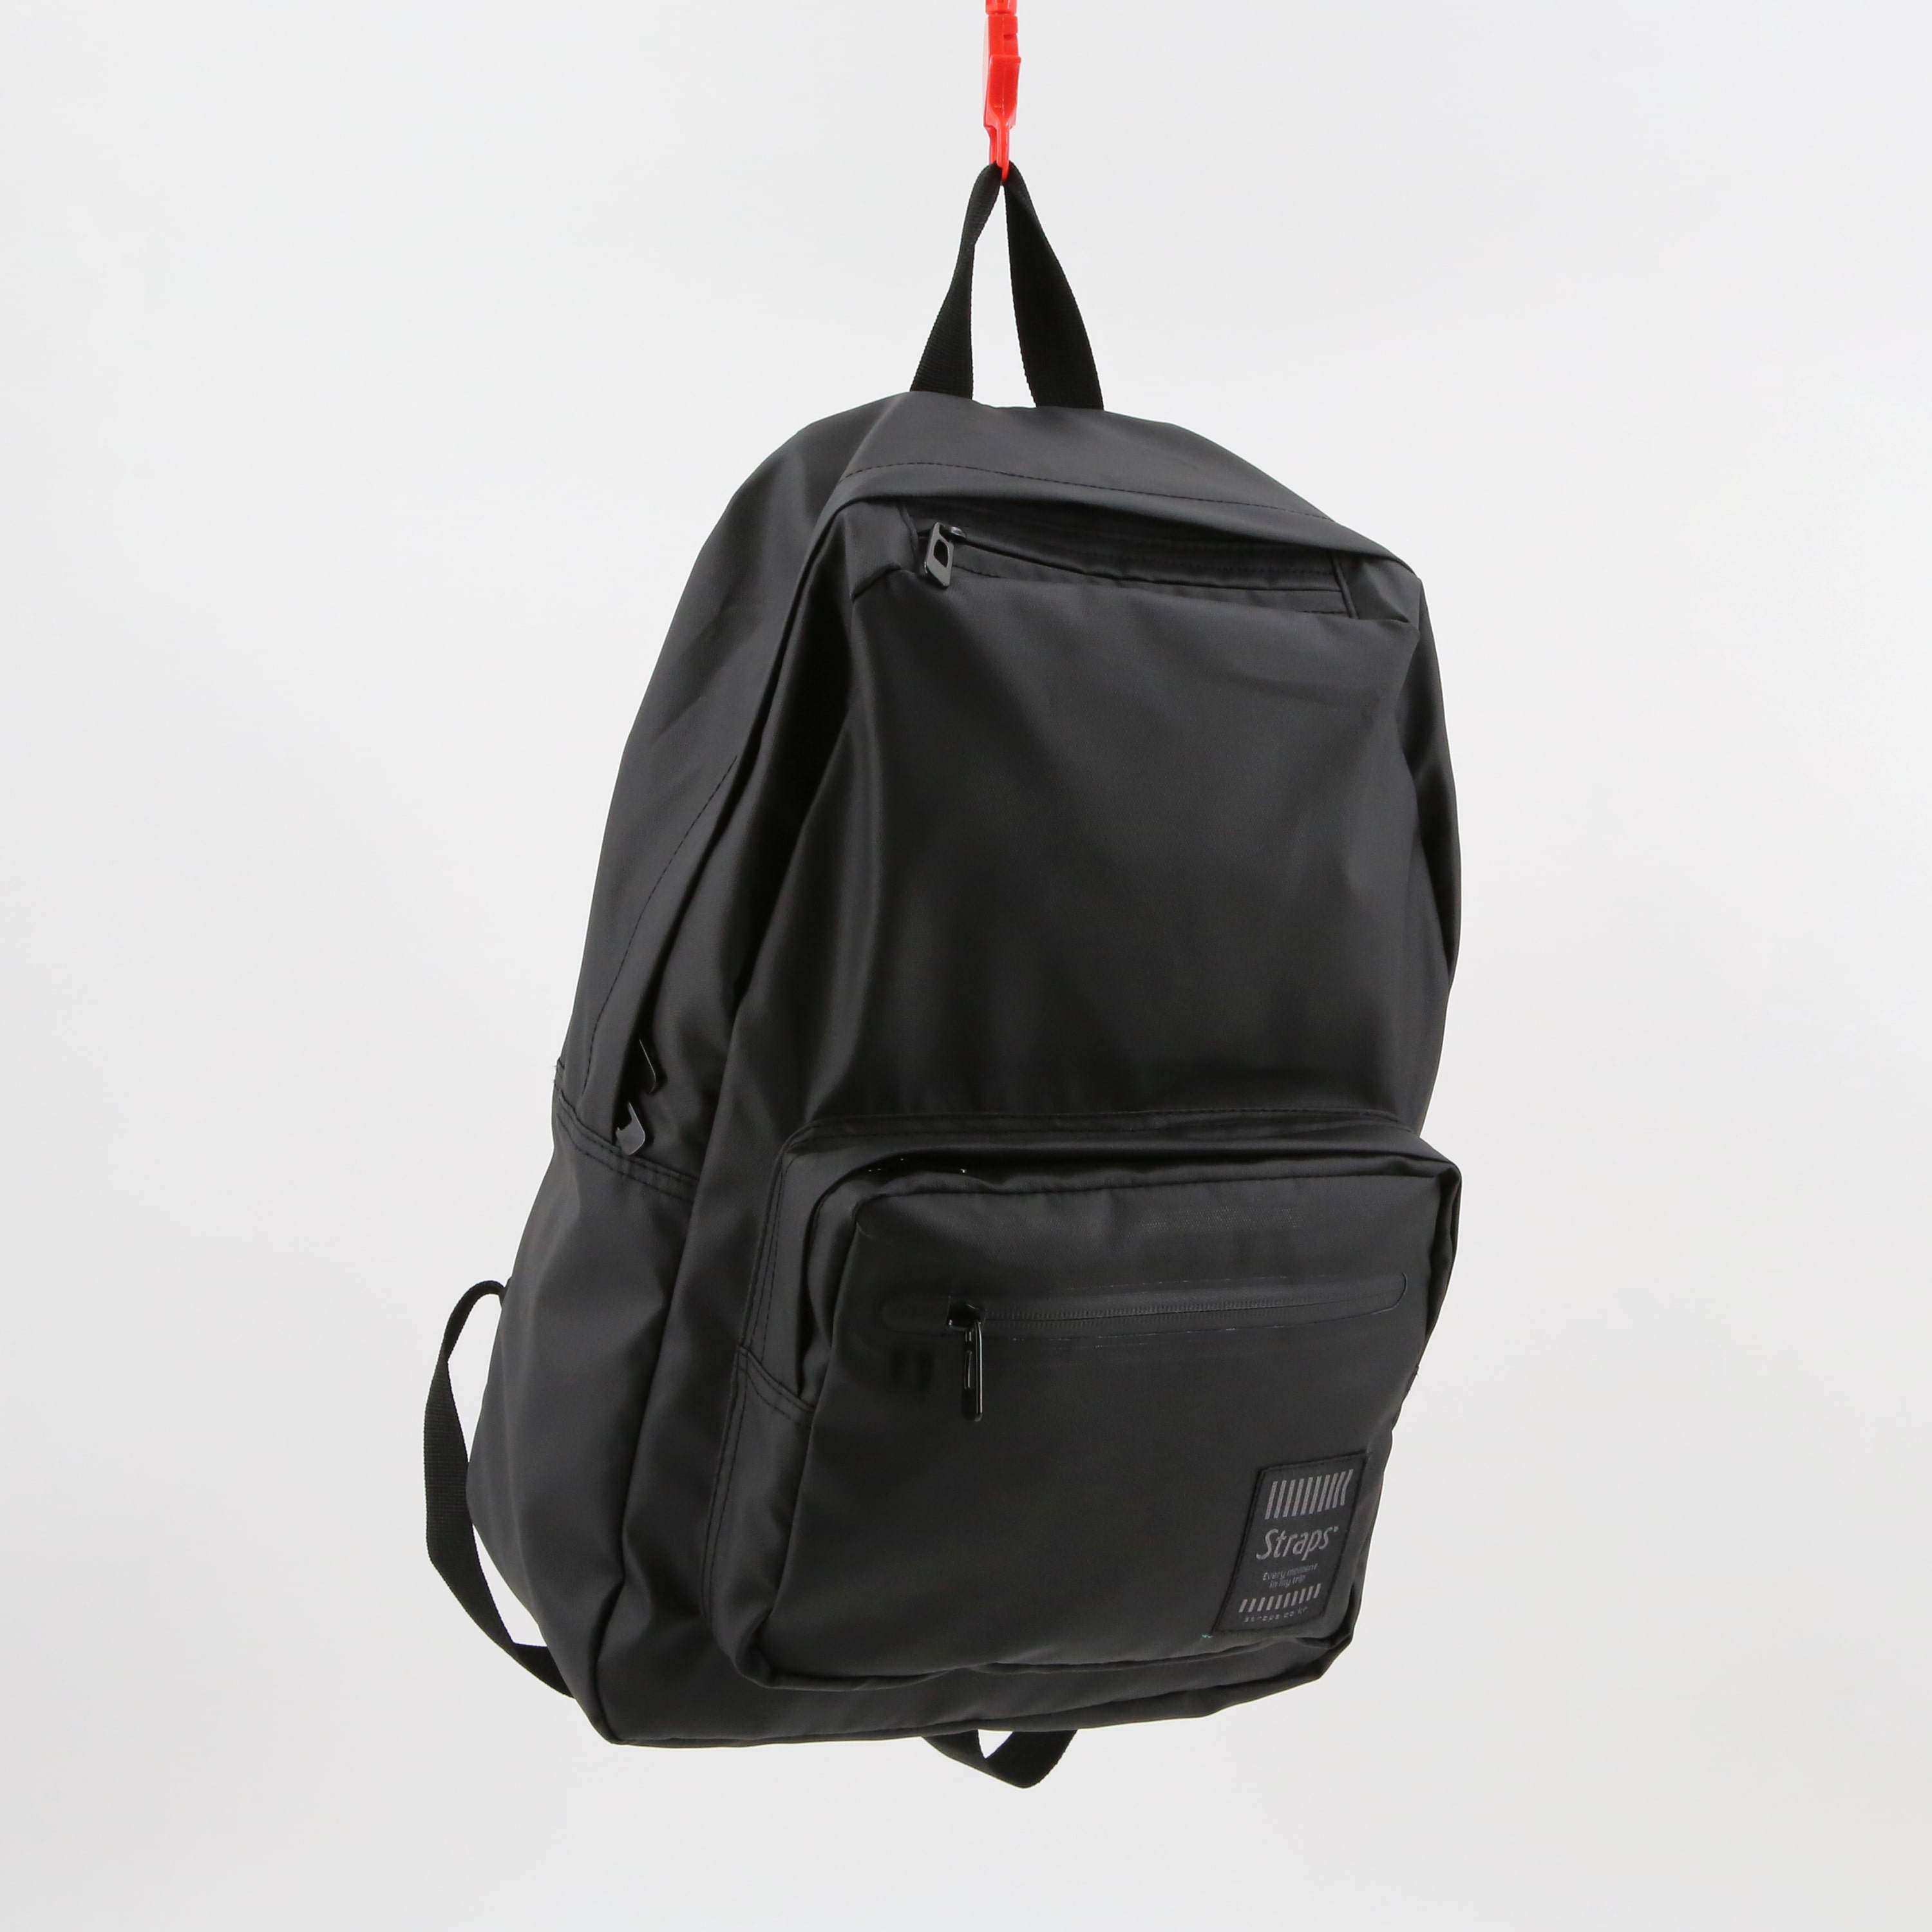 Rapid Black Series Backpack 002